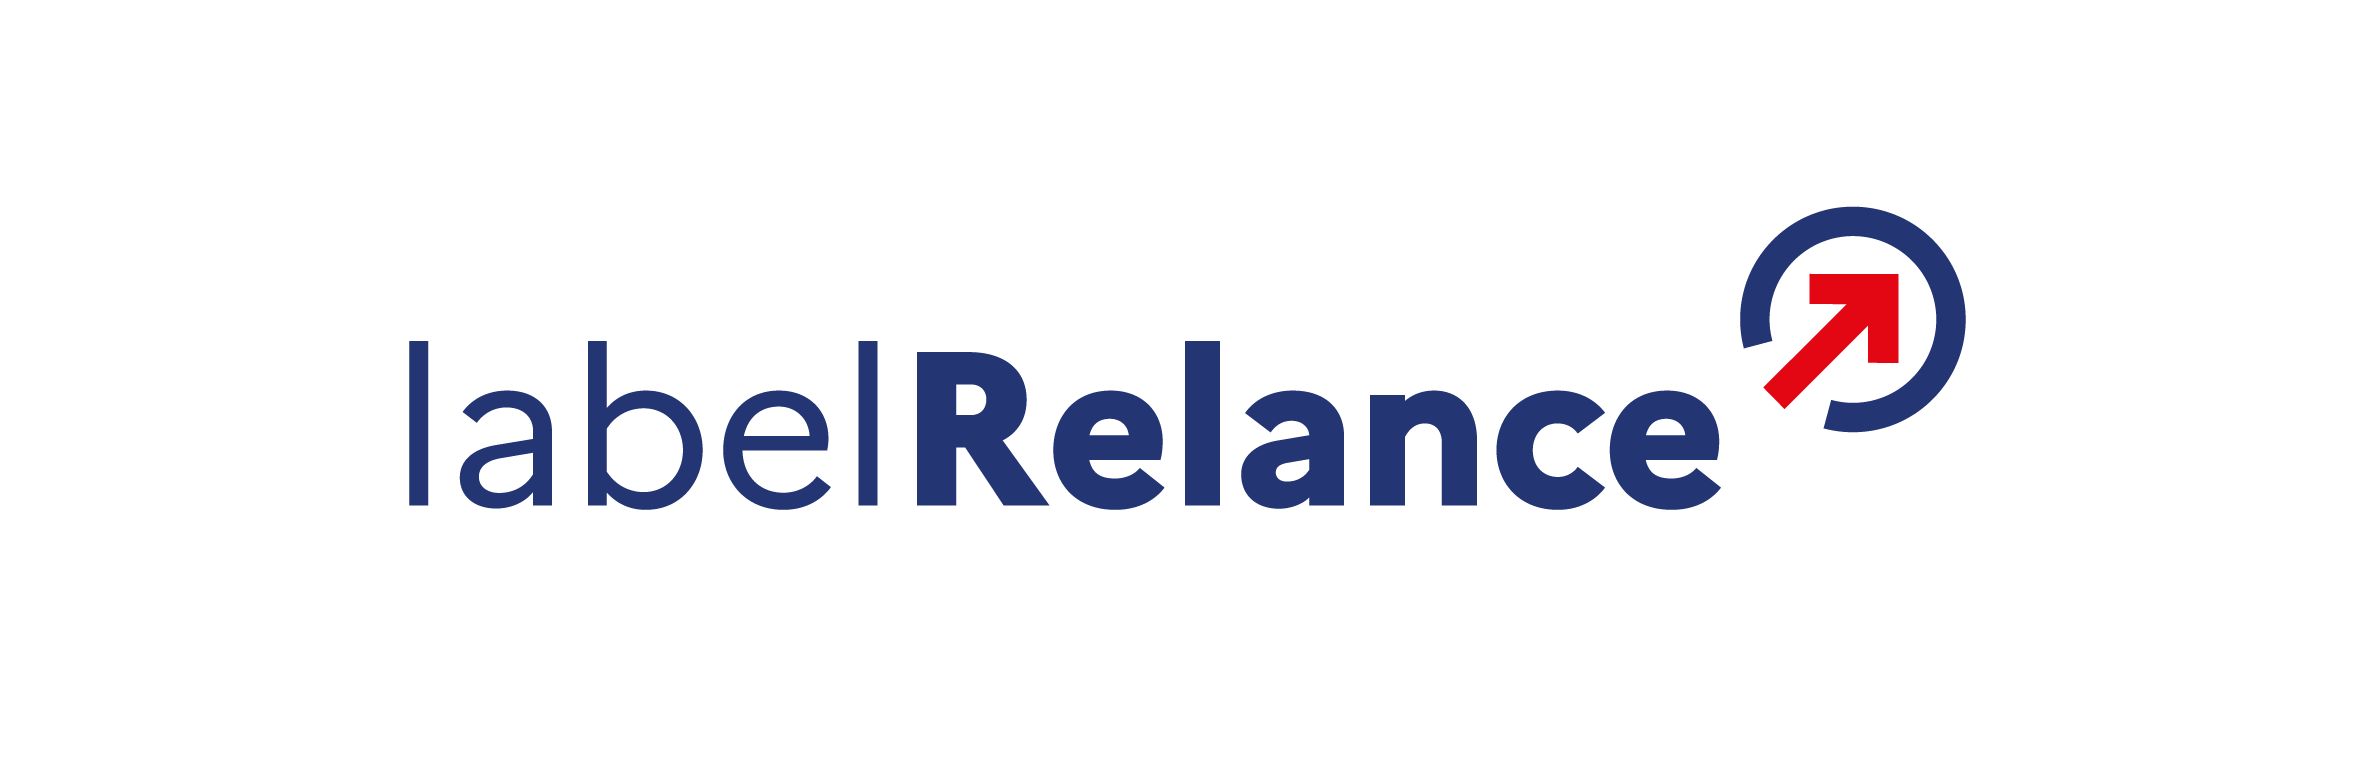 logo-label-relance-RVB